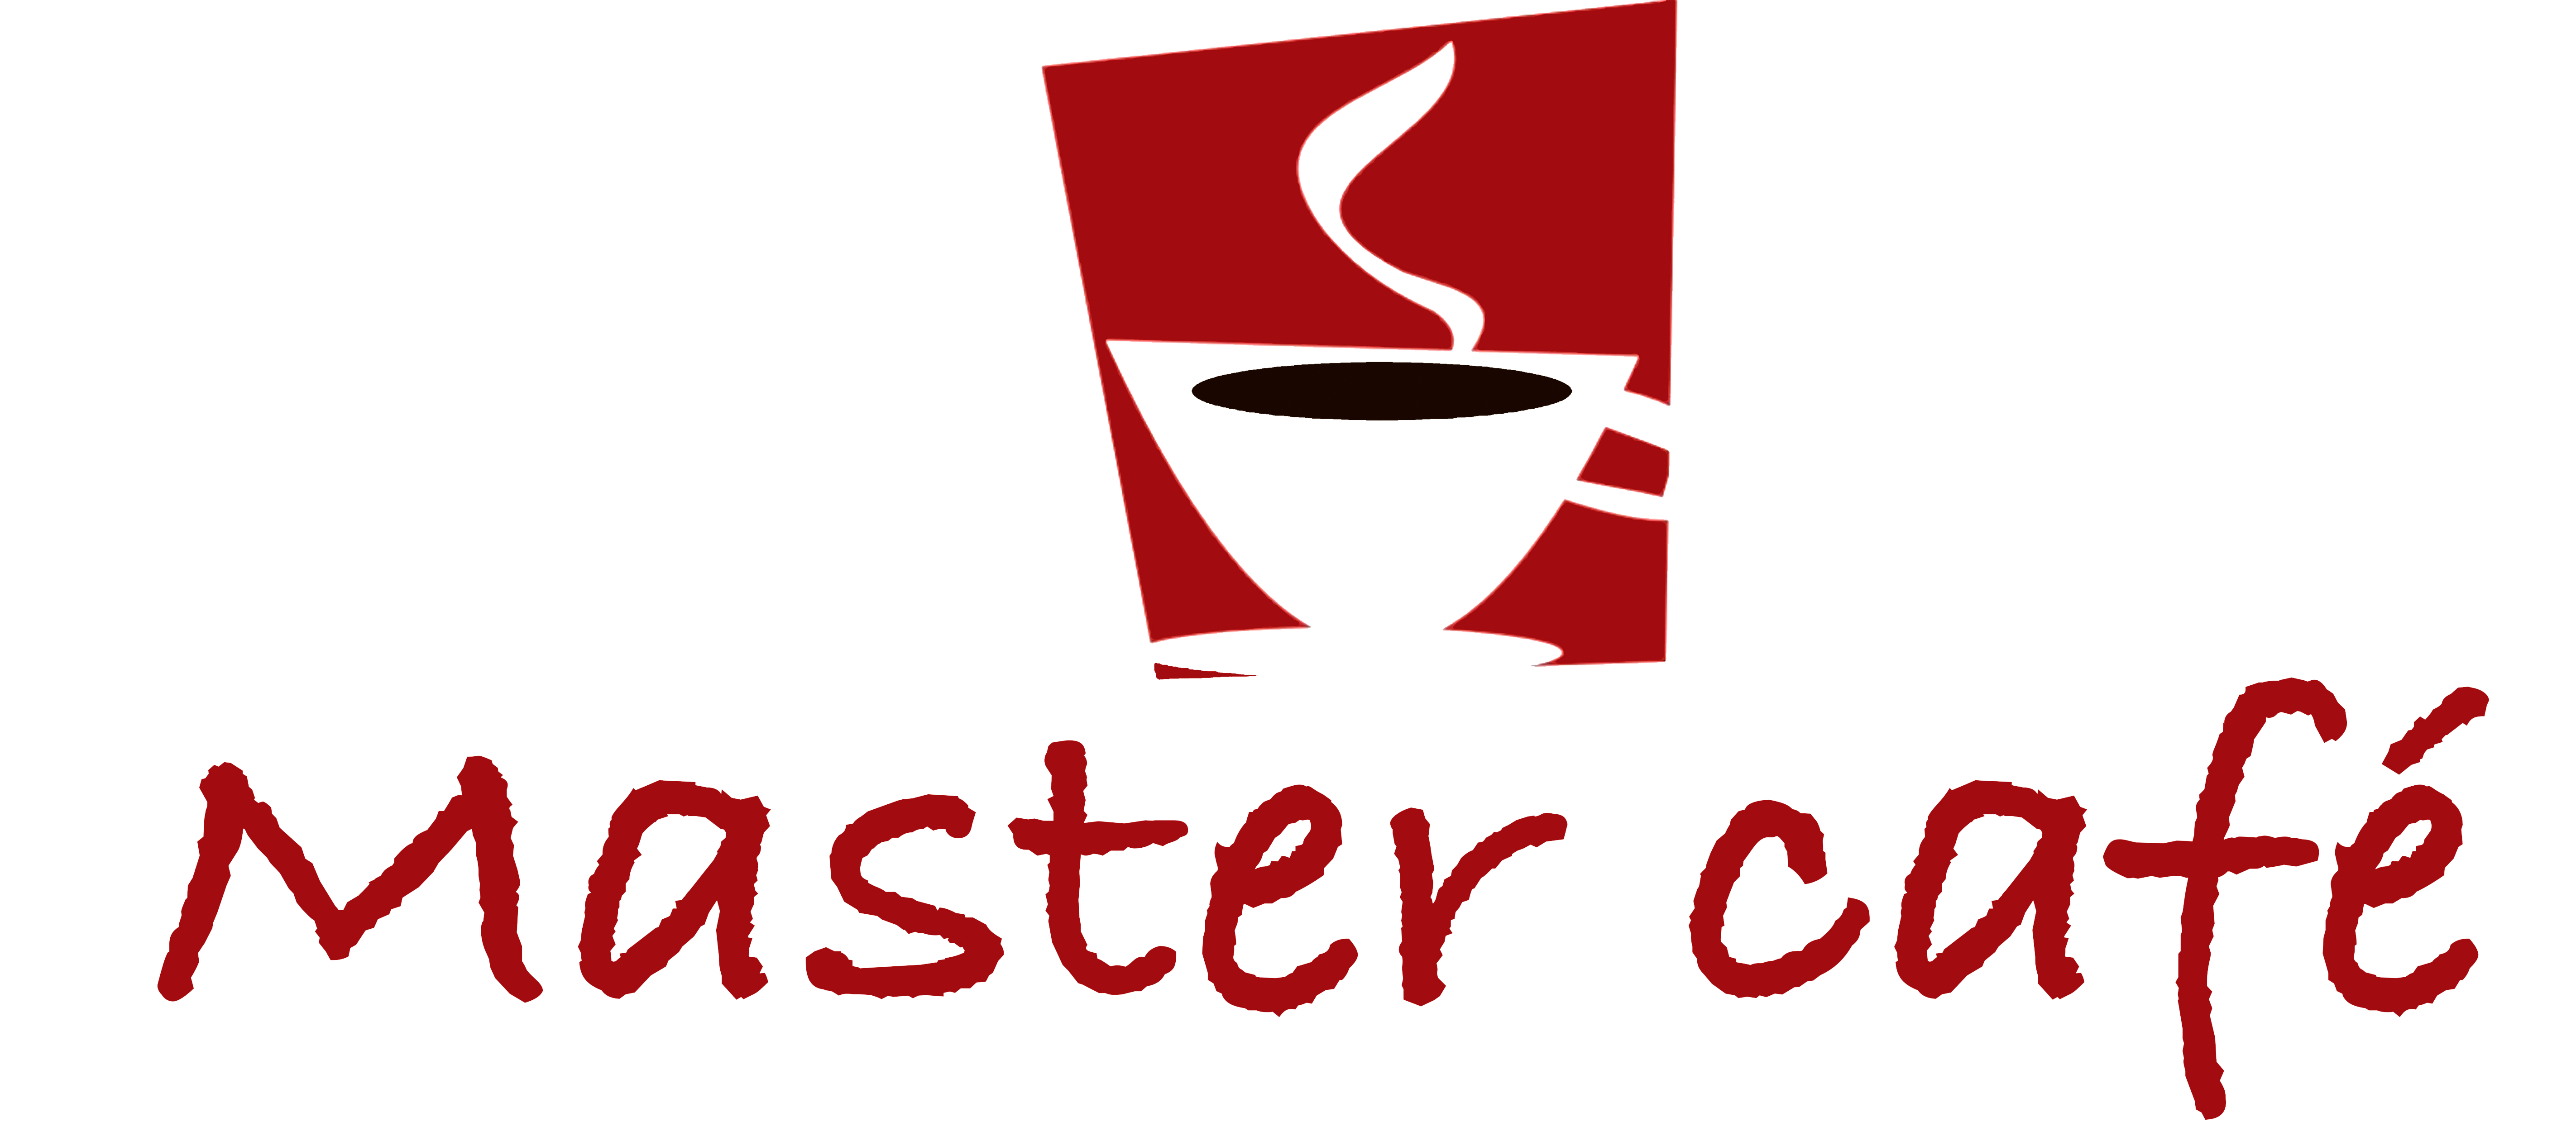 Master Café